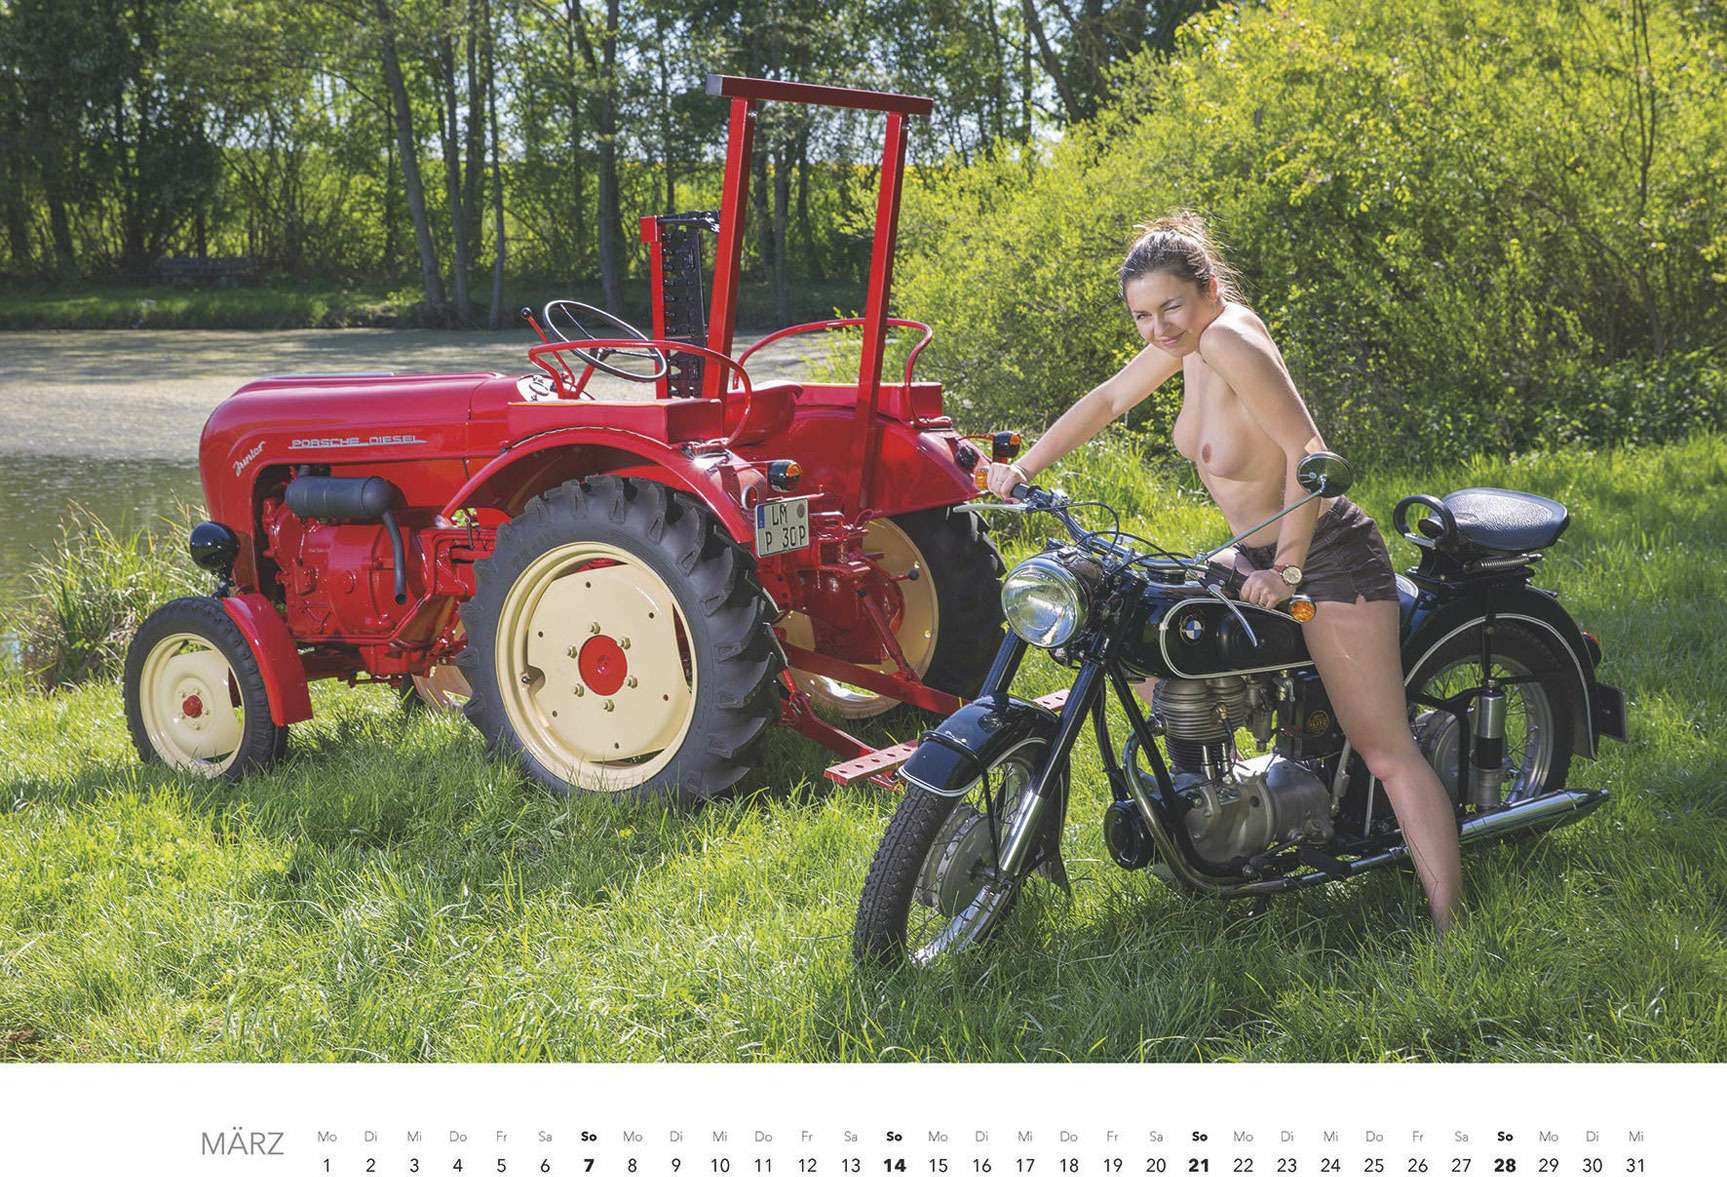 Первый календарь на 2021 год: не очень одетые трактористки (18+) — фото 1196272